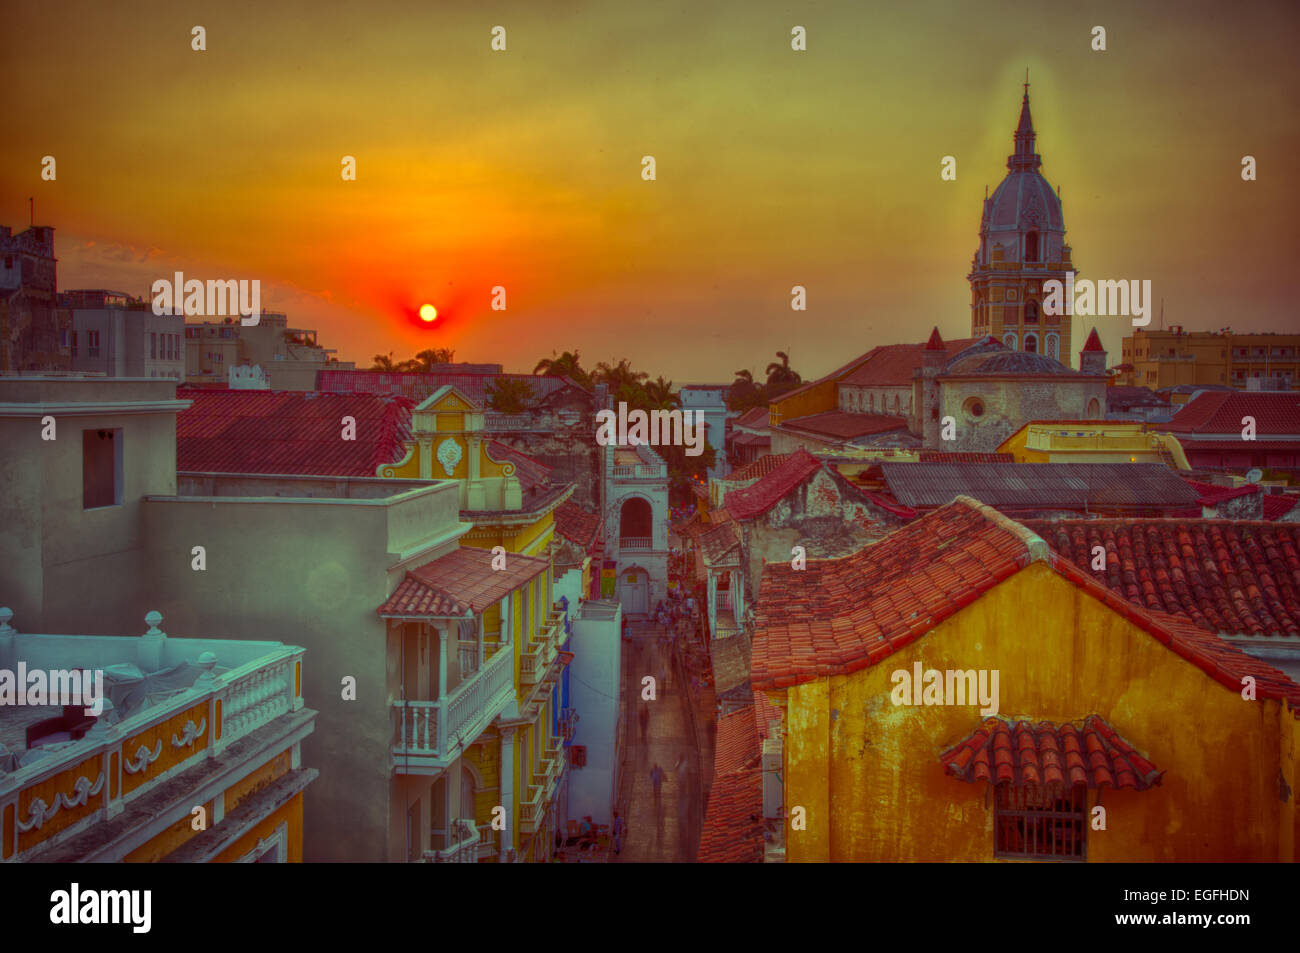 Zeigen Sie über die Dächer der alten Stadt Cartagena eine lebendige Sonnenuntergang an. Der Turm der Kathedrale von Cartagena steht groß und pr Stockfoto